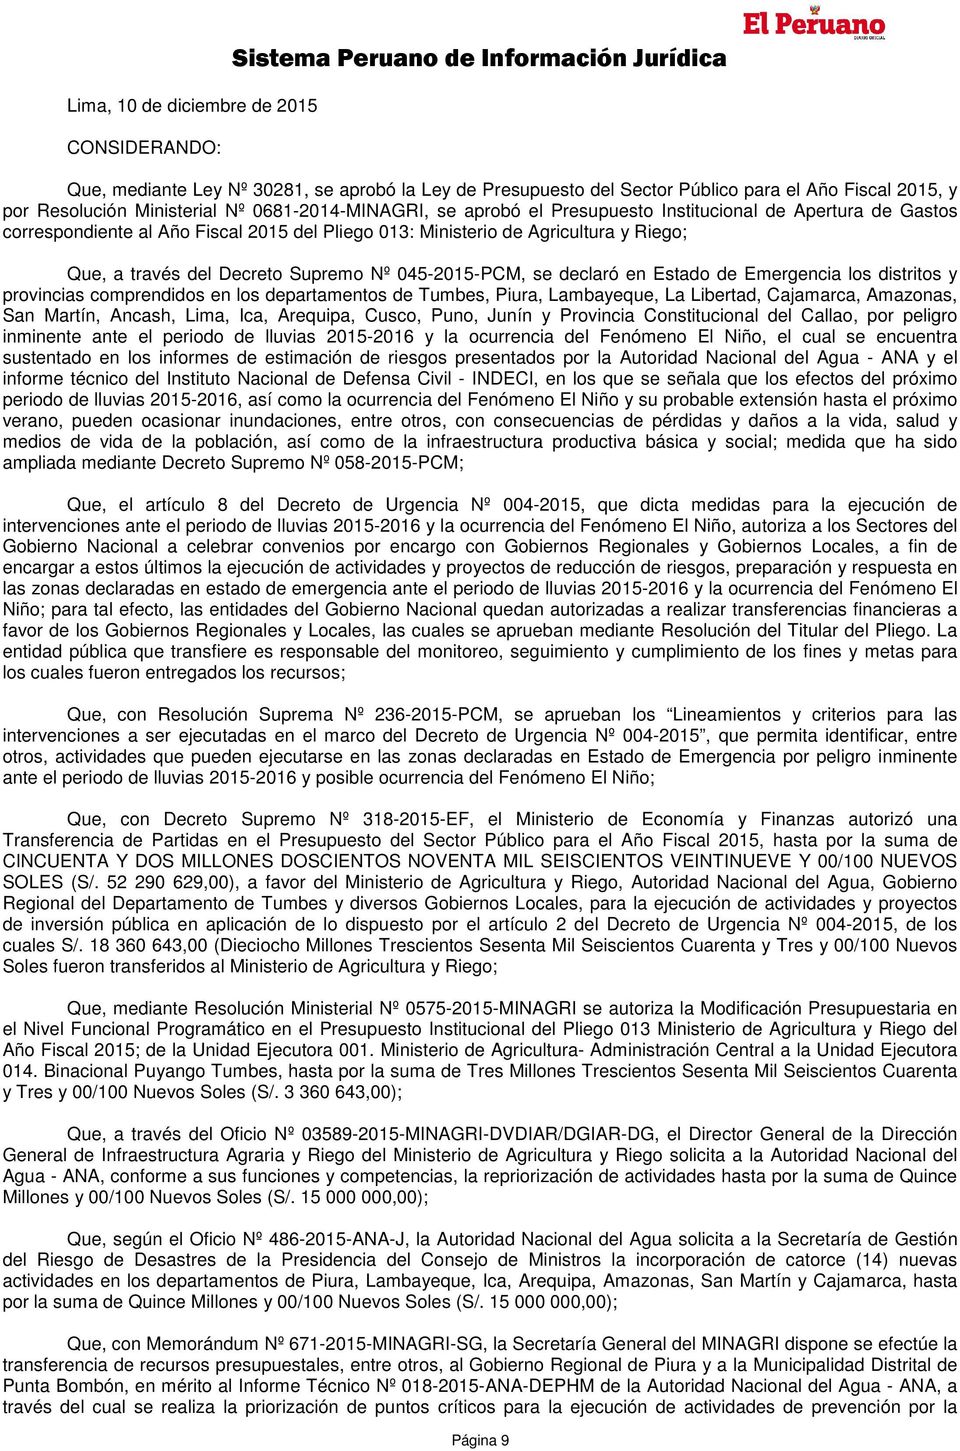 Decreto Supremo Nº 045-2015-PCM, se declaró en Estado de Emergencia los distritos y provincias comprendidos en los departamentos de Tumbes, Piura, Lambayeque, La Libertad, Cajamarca, Amazonas, San